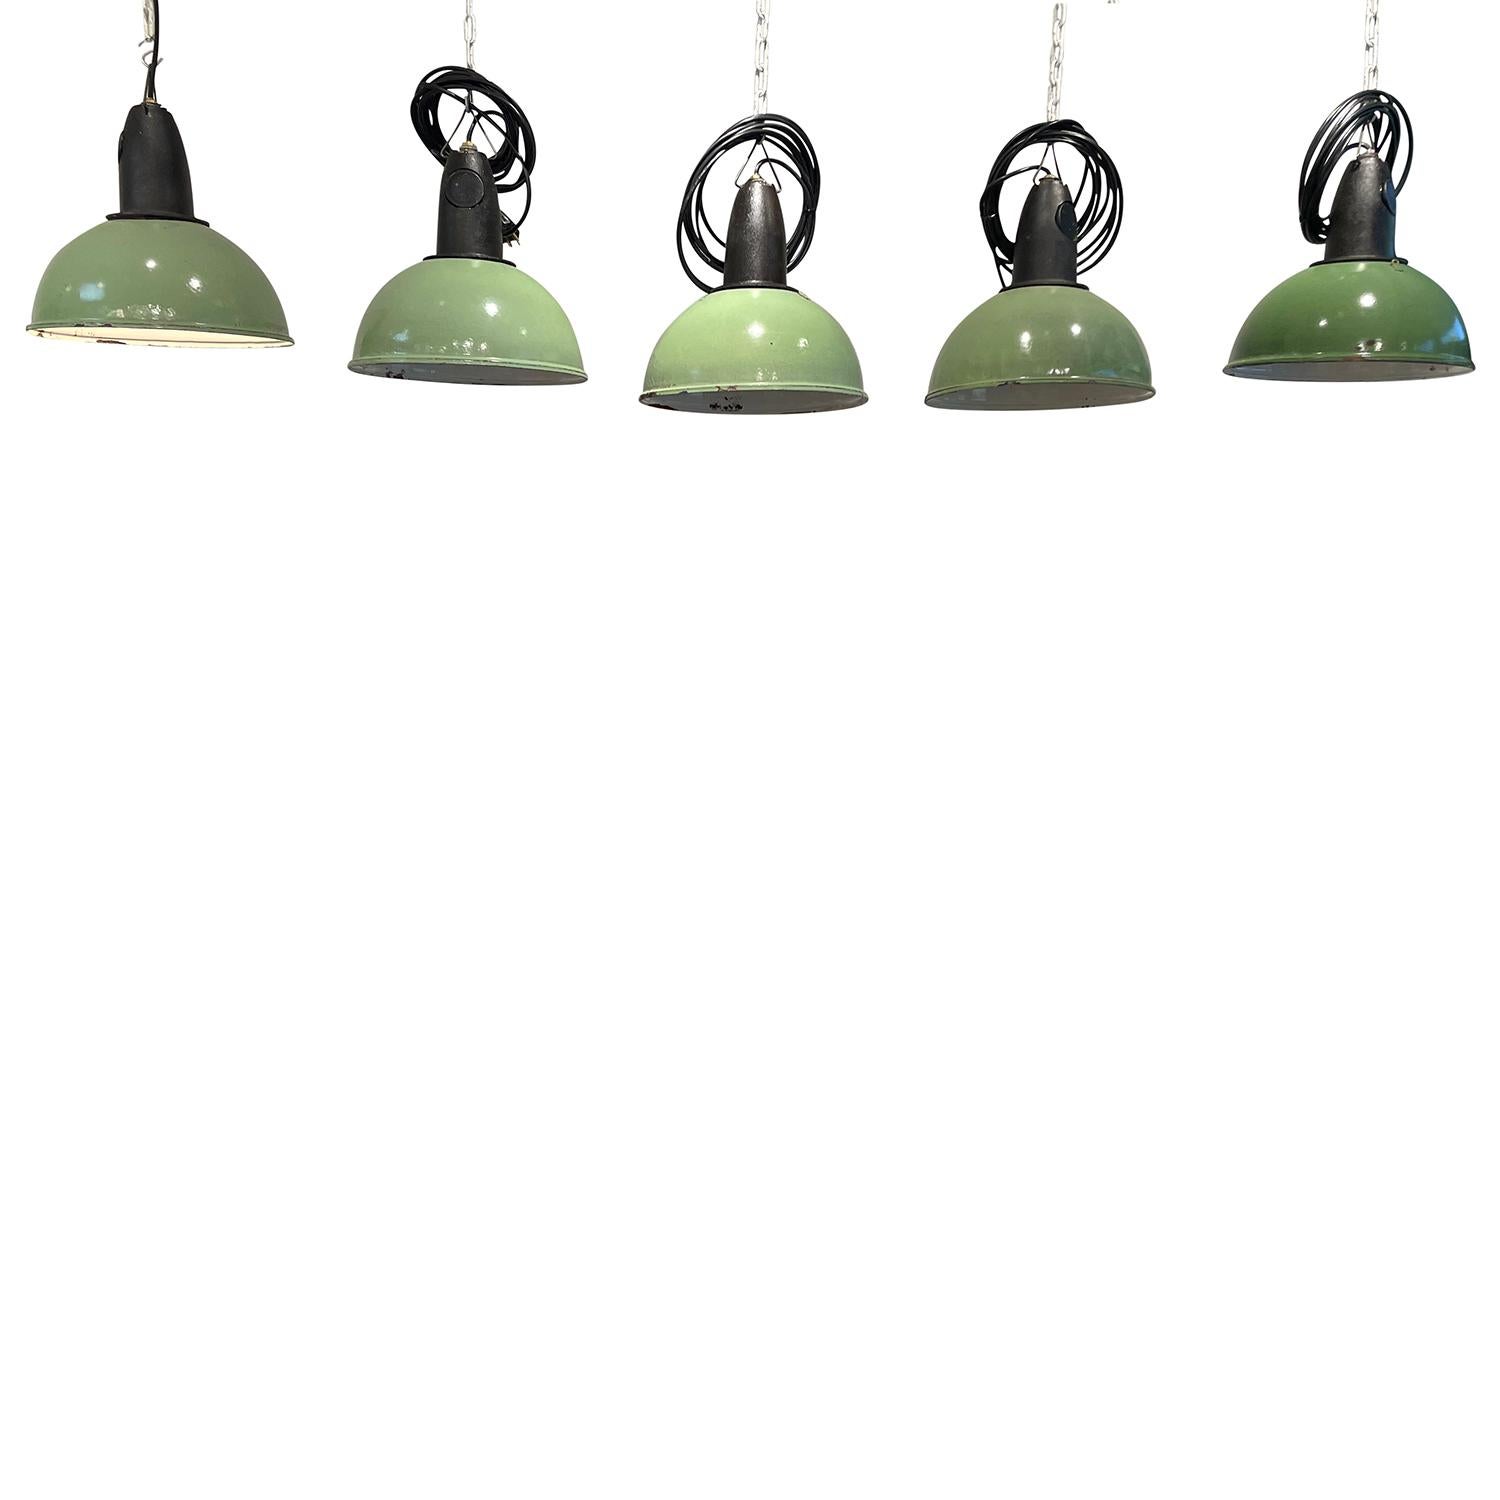 Un ensemble de cinq plafonniers verts de style industriel français vintage, lampes en métal travaillées à la main, en bon état. Chaque pendentif rond contient une seule douille. Les fils ont été changés. Décoloration mineure due à l'âge. Usure